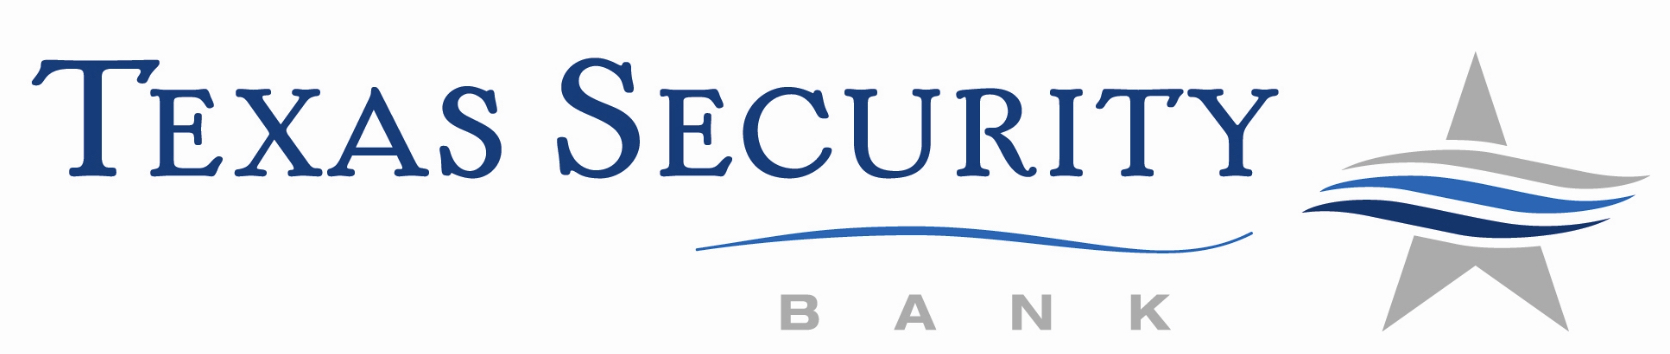 Texas Security Bank 